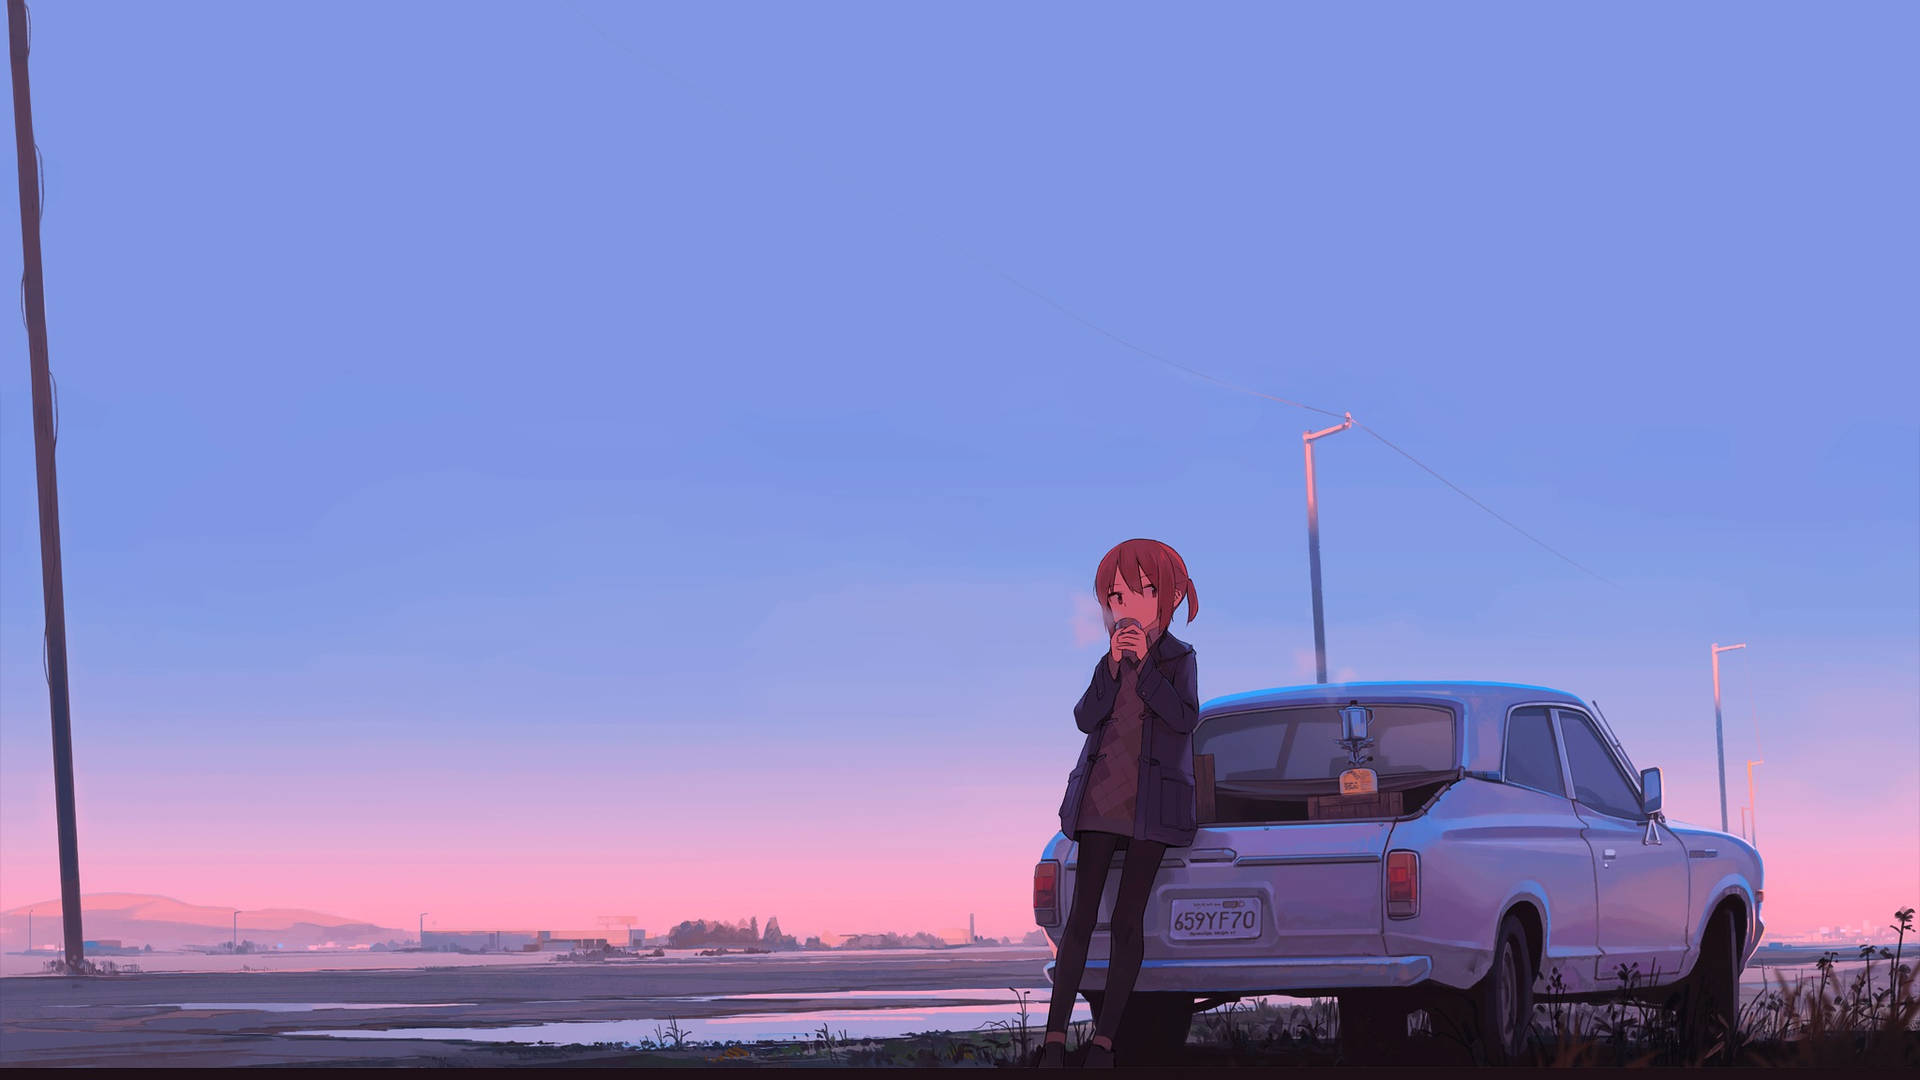 Anime Aesthetic Girl On Car For Computer Wallpaper